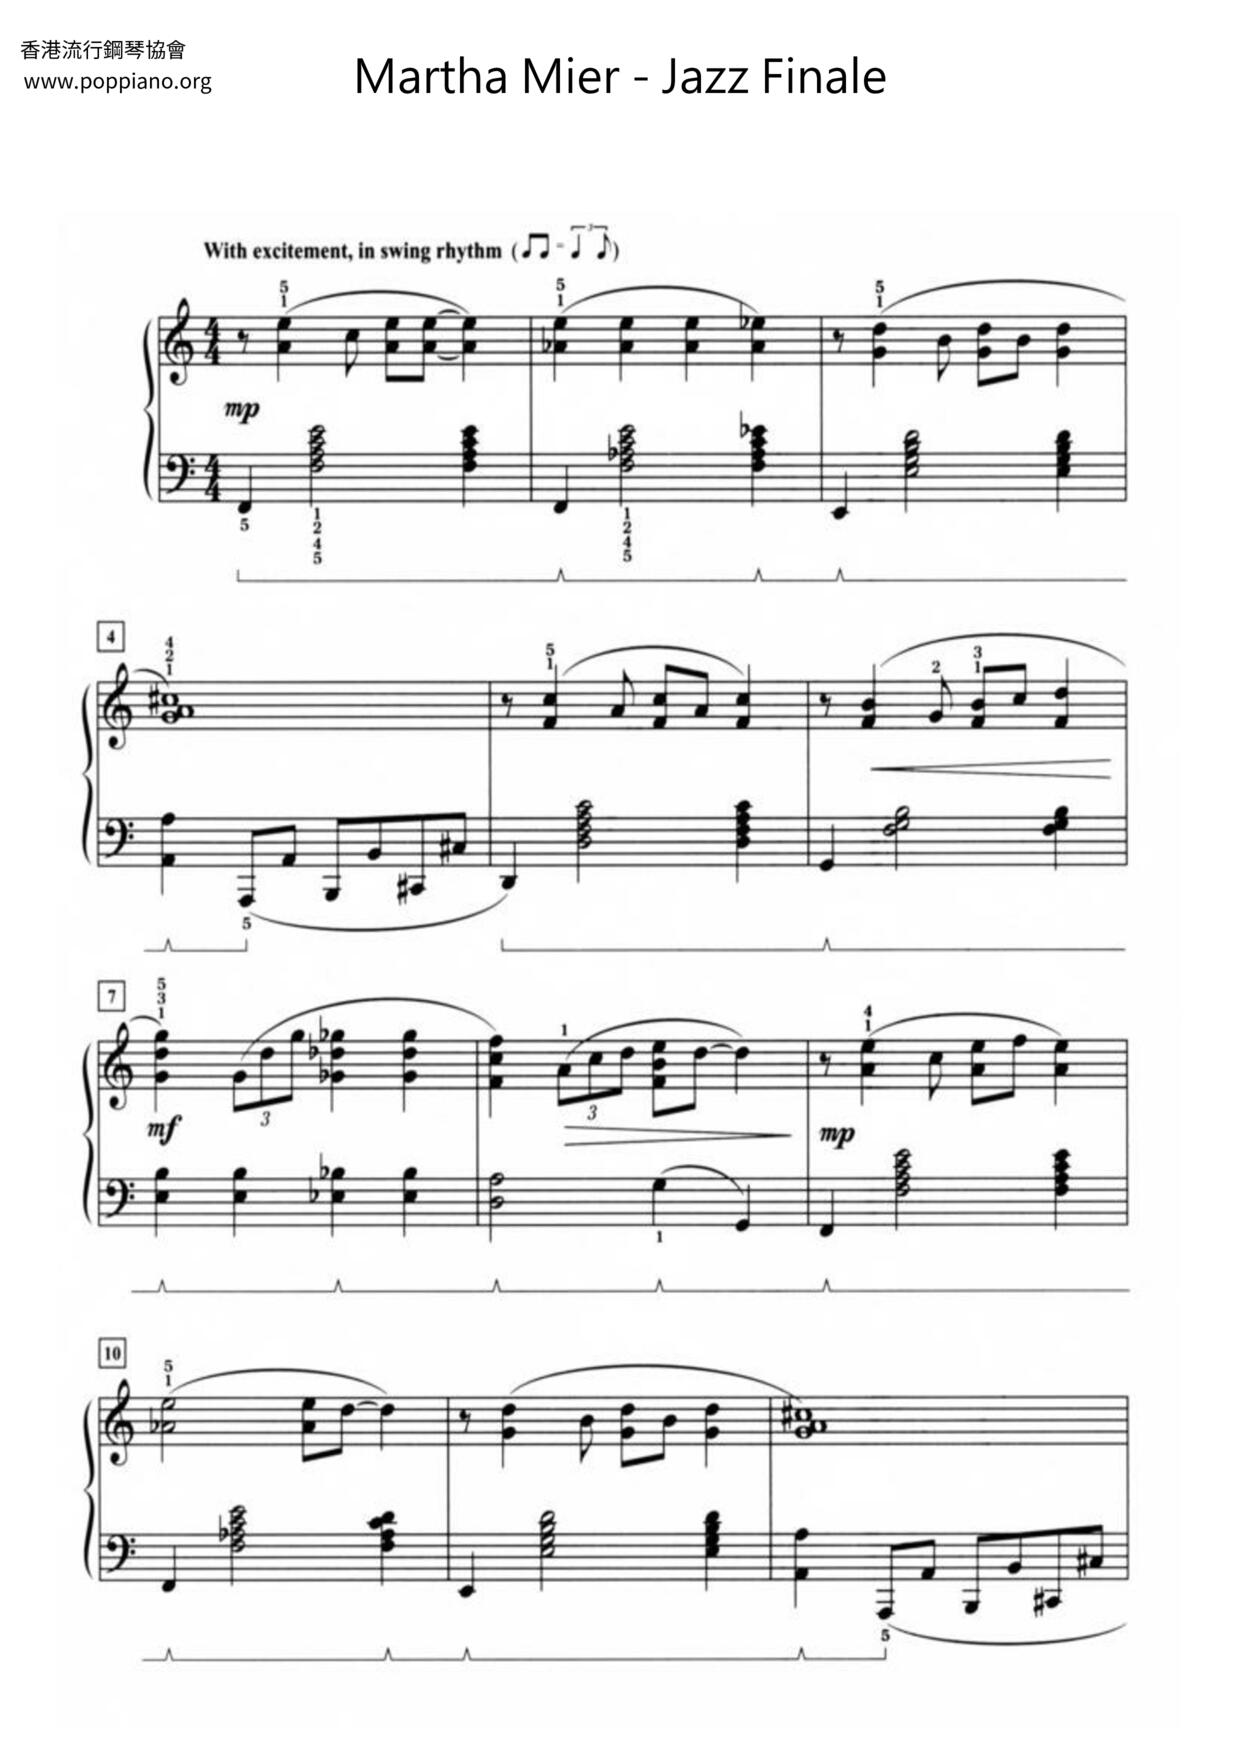 Jazz Finale Score